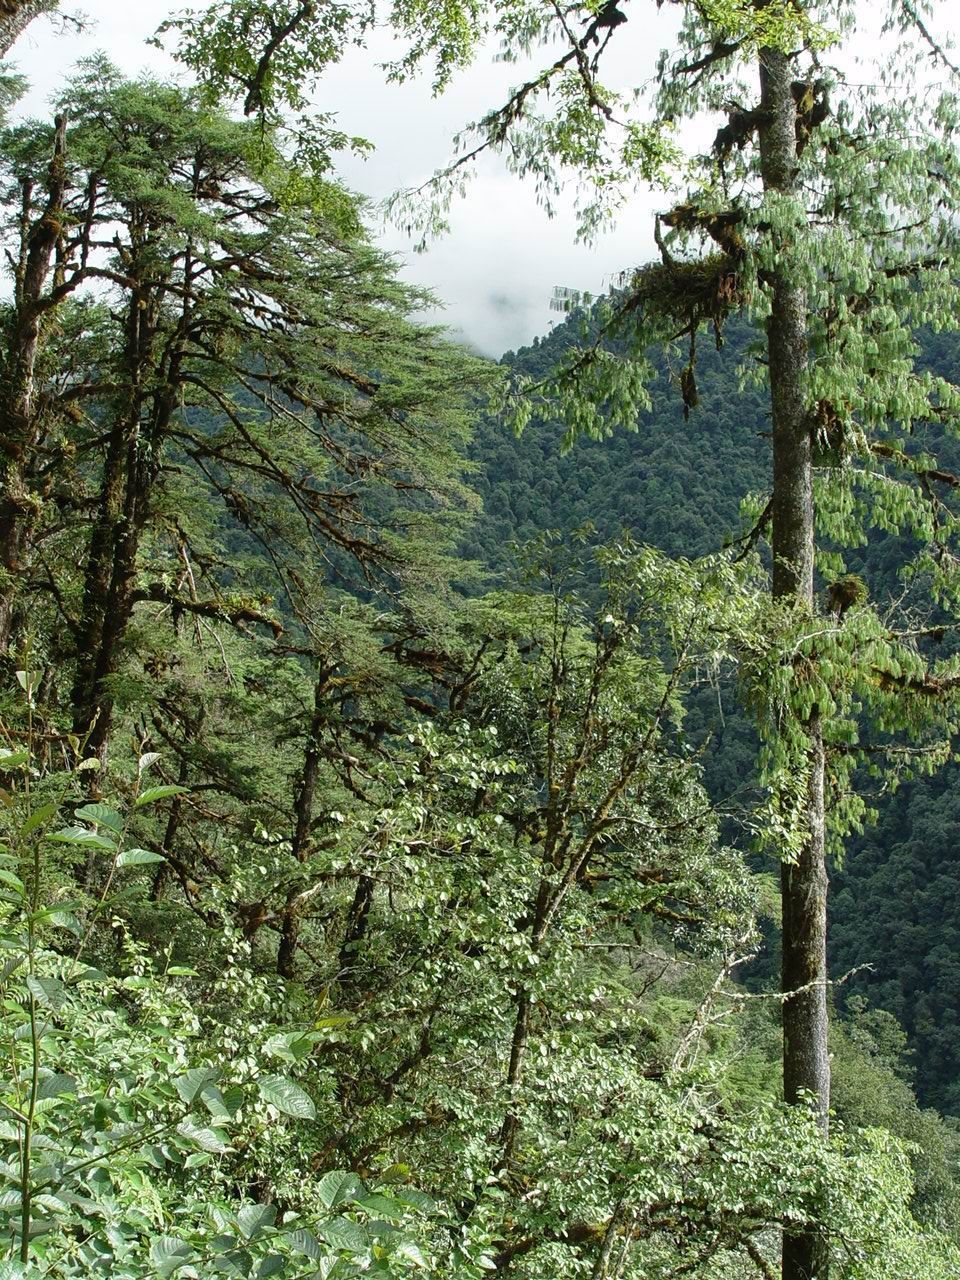 Image of Bhutan Pine